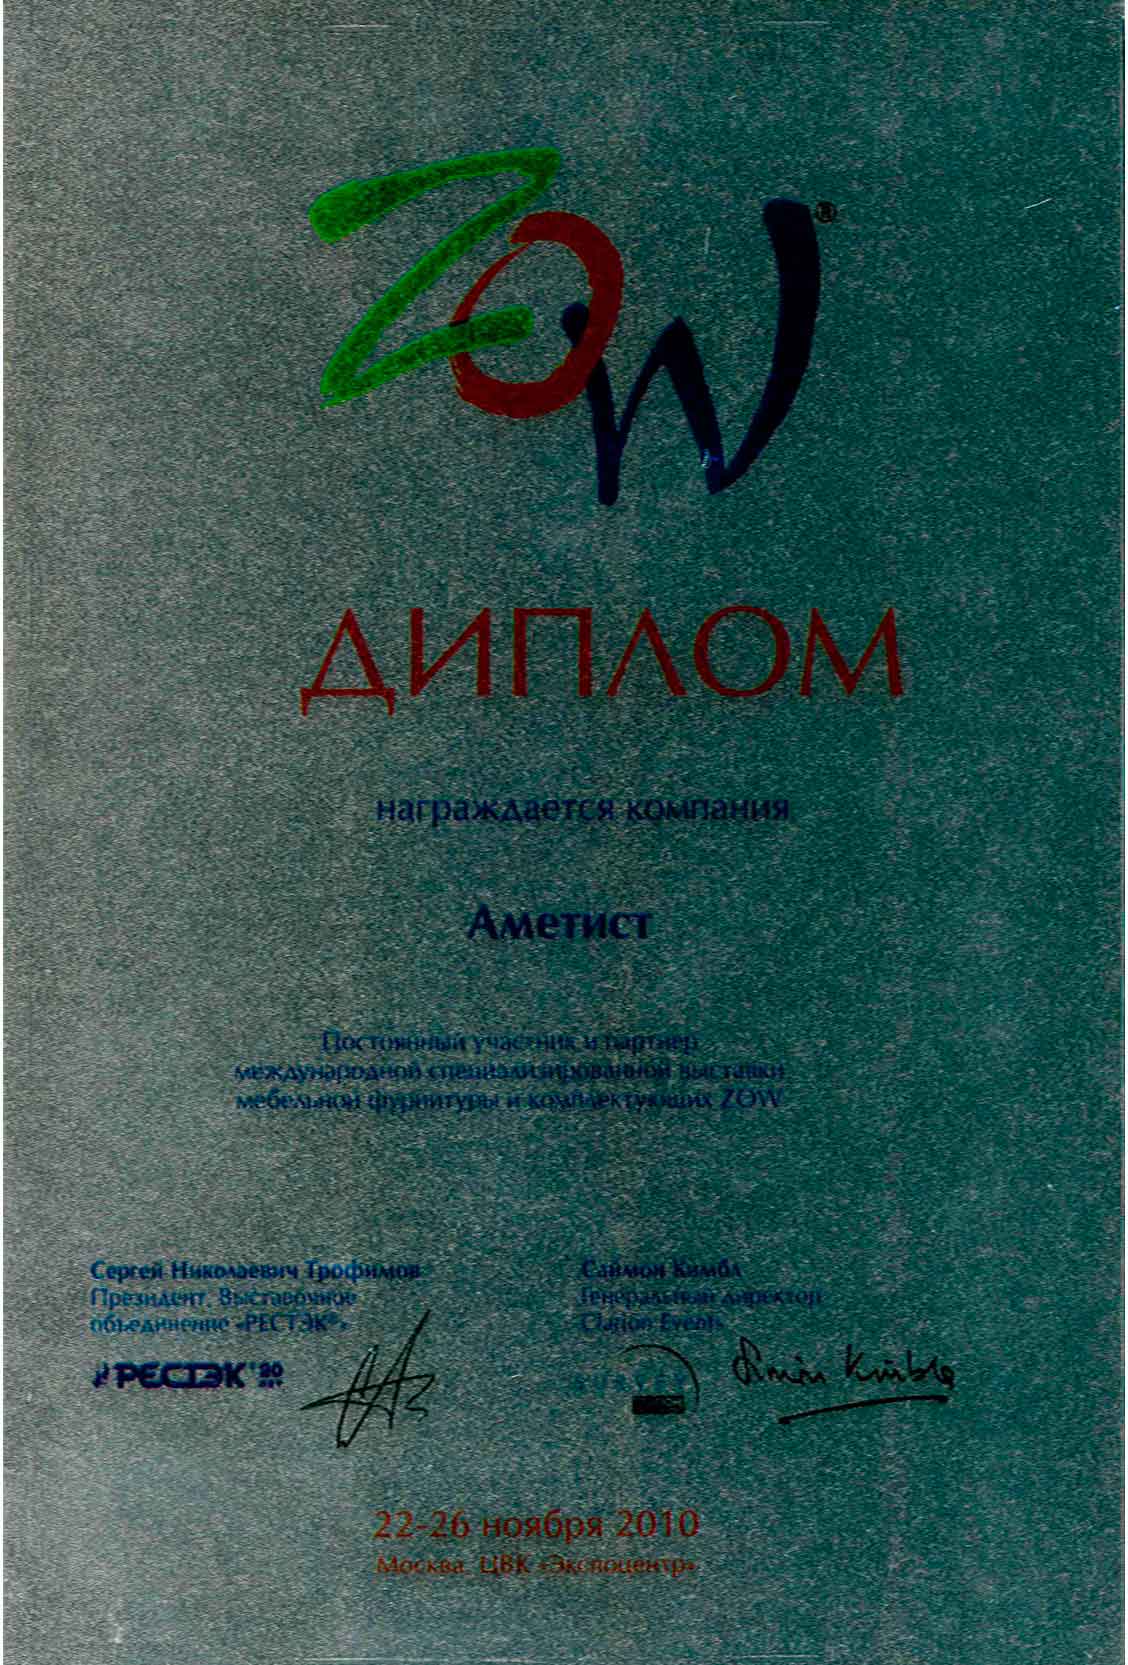 Диплом (постоянный участник и партнер международной специализированной выставки мебельной фурнитуры и комплектующих  ZOW)